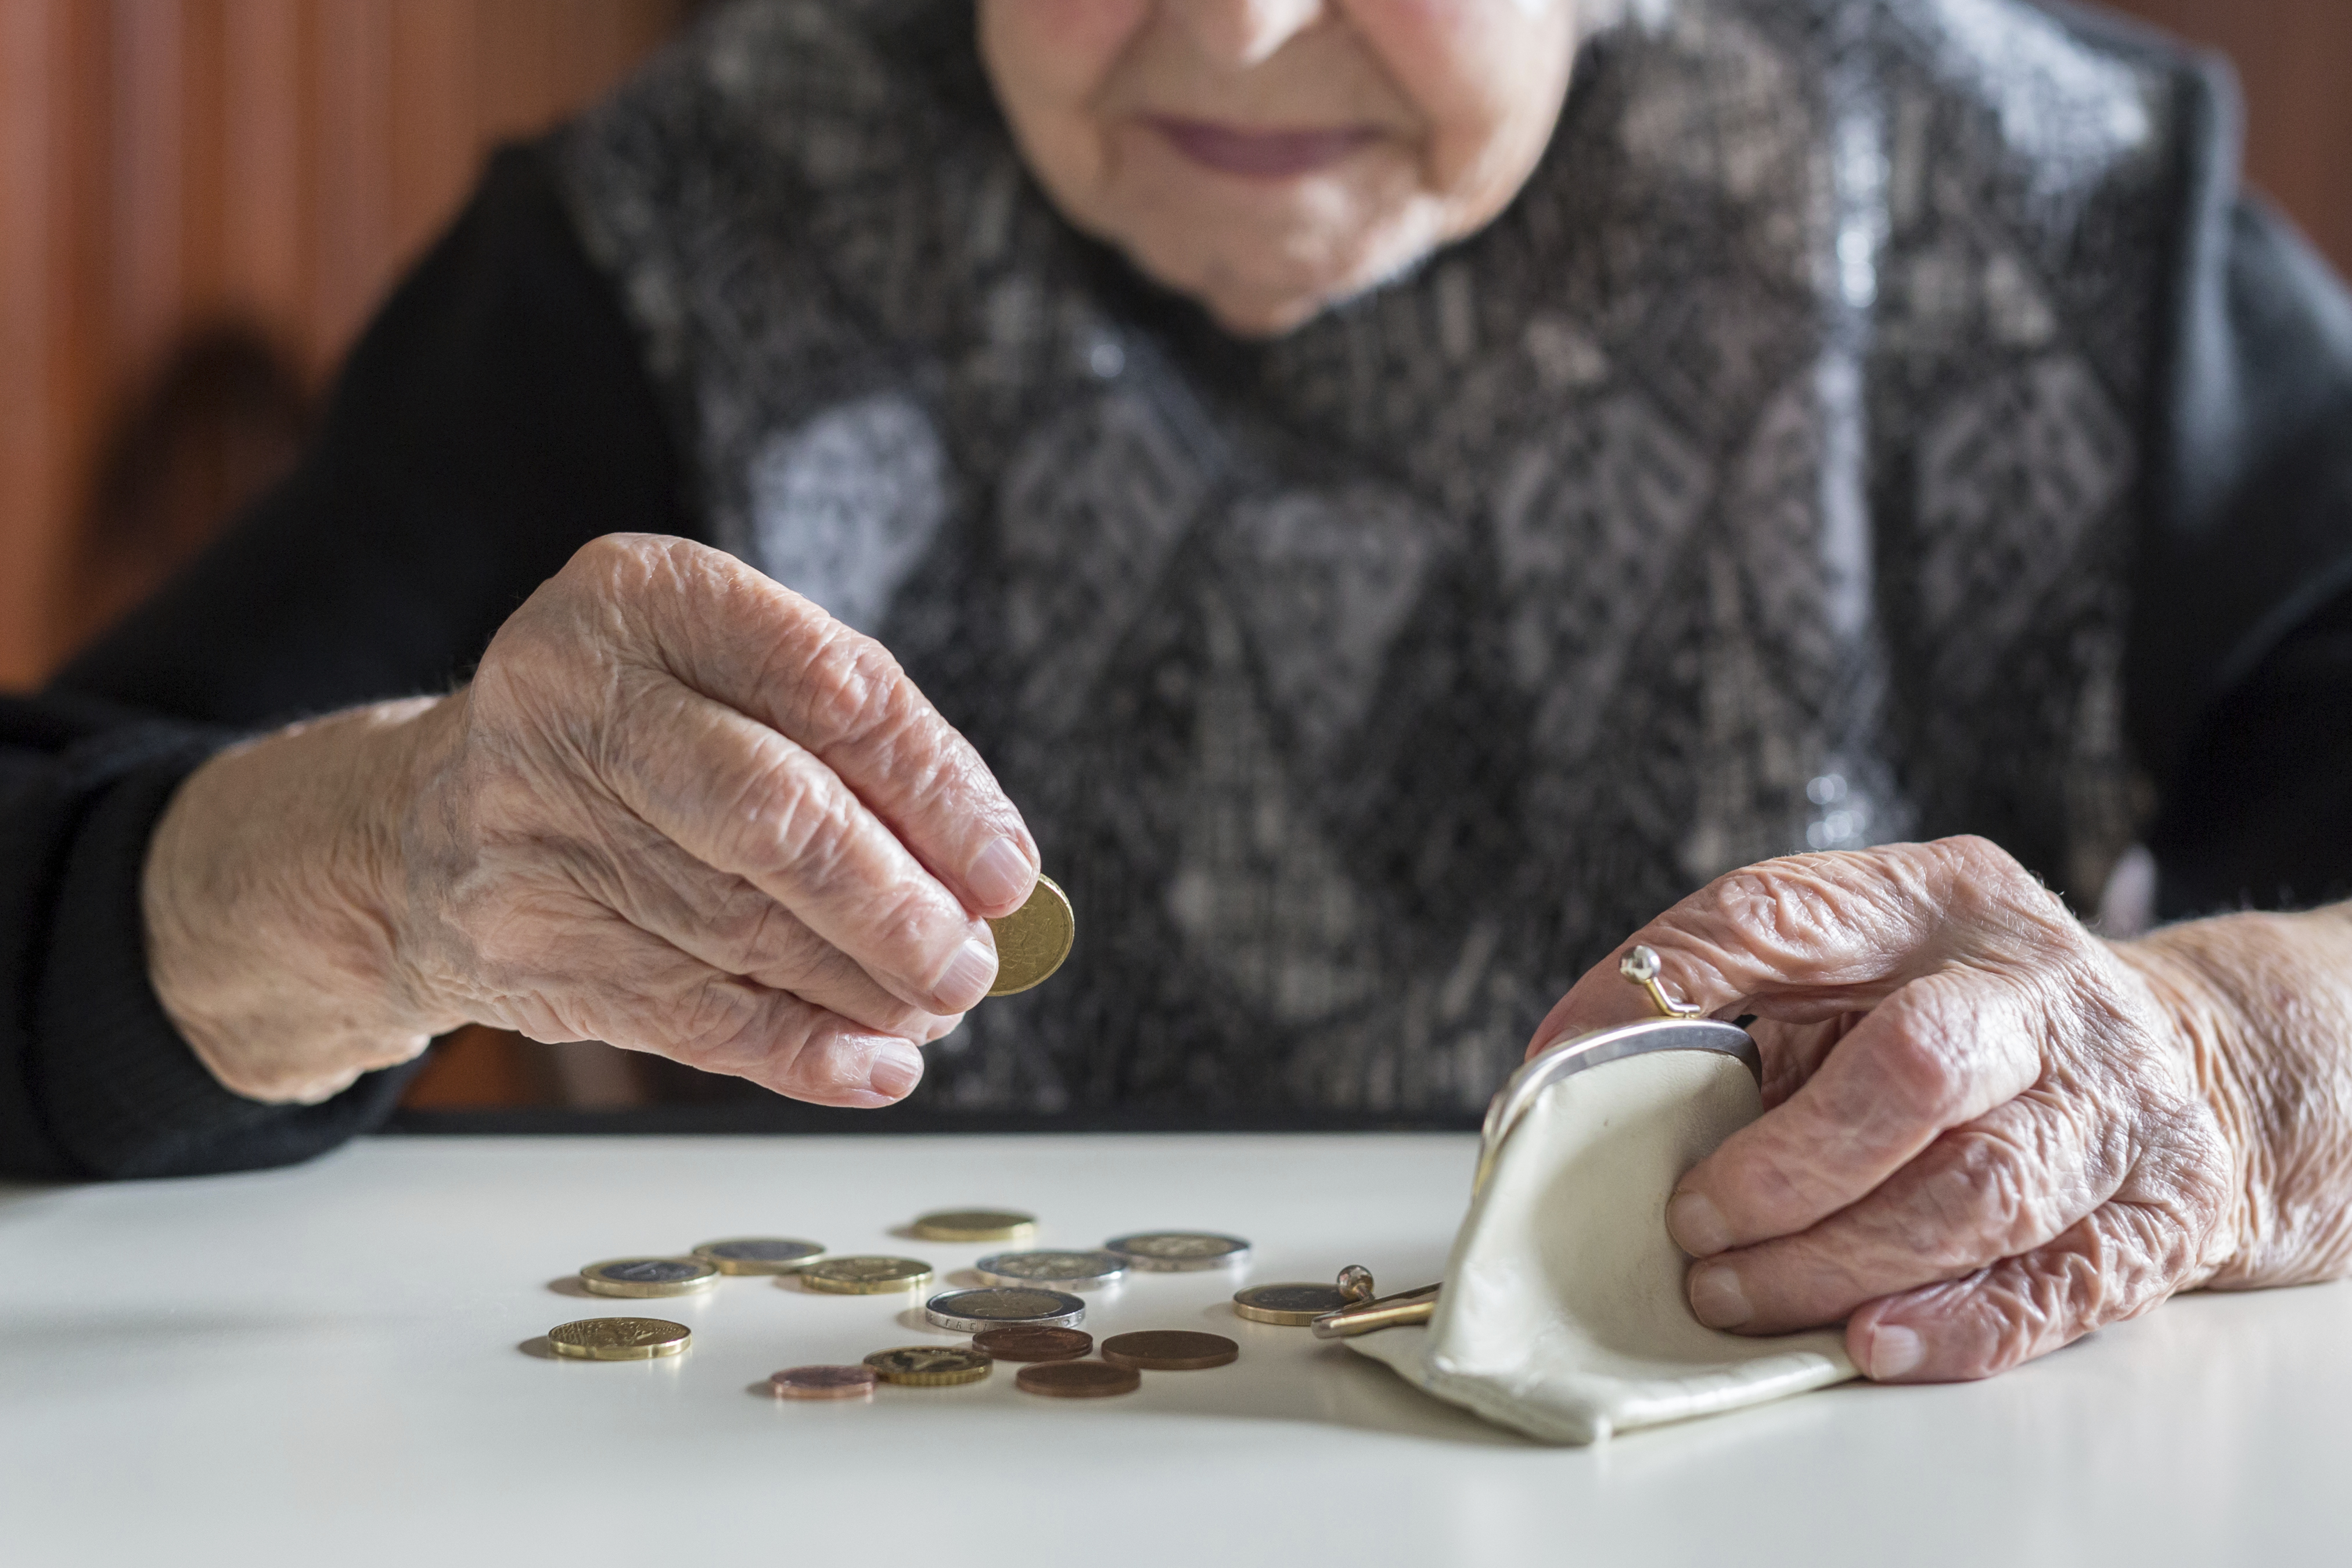 Les dépenses de retraite vont-elles forcément augmenter à l'avenir ?